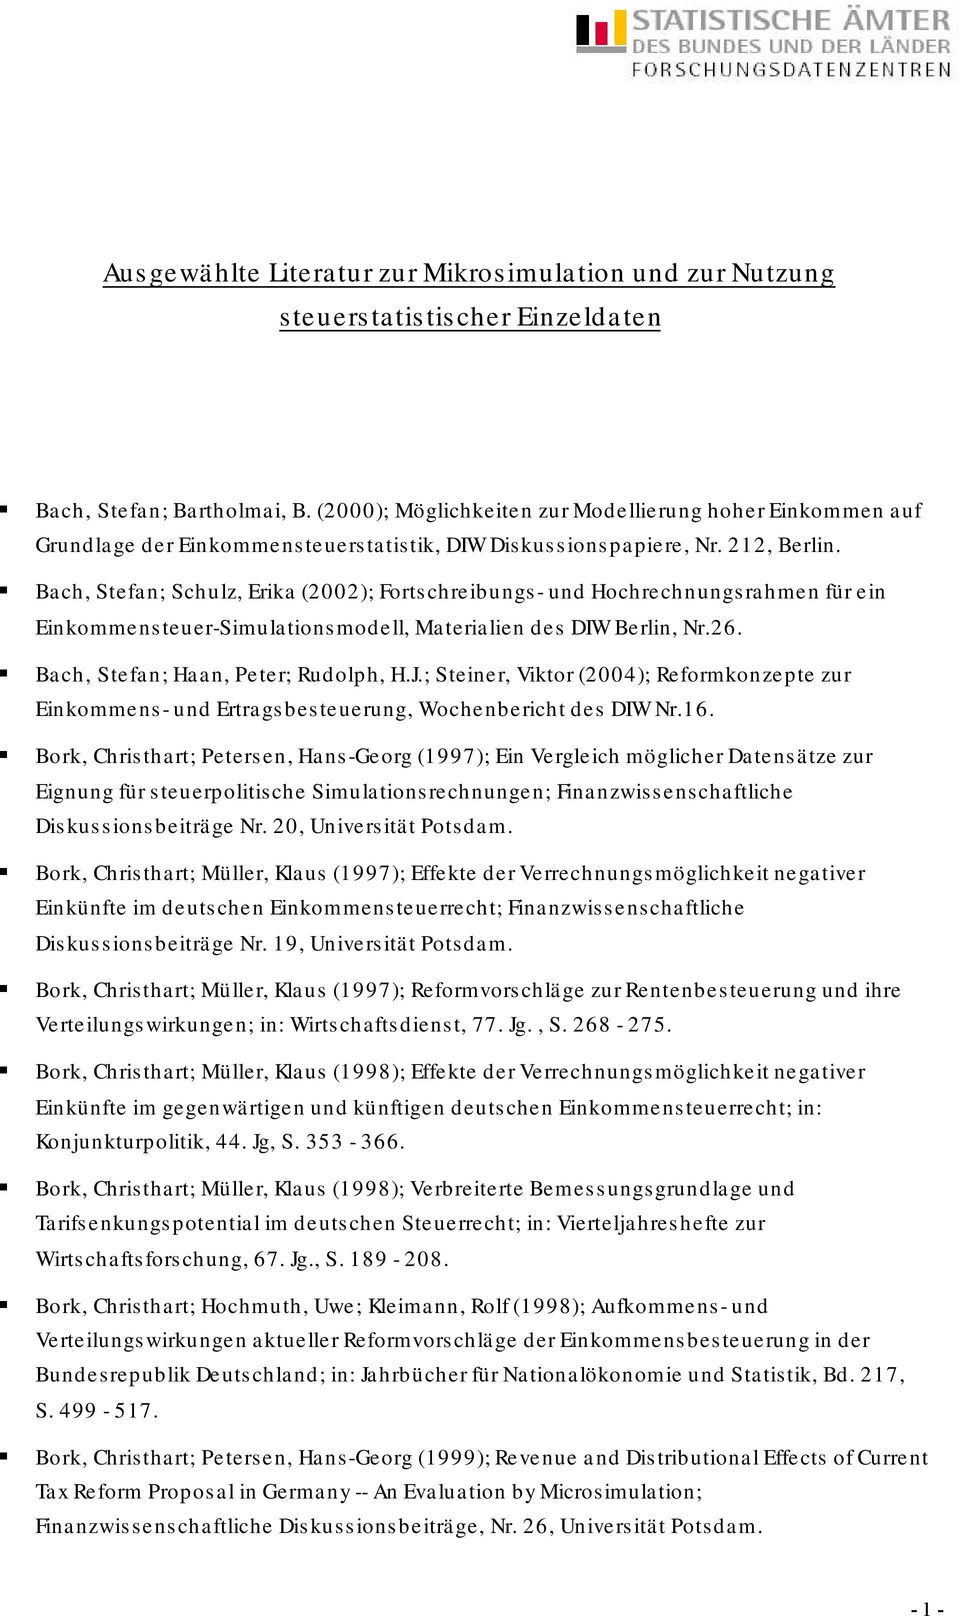 Bach, Stefan; Schulz, Erika (2002); Fortschreibungs- und Hochrechnungsrahmen für ein Einkommensteuer-Simulationsmodell, Materialien des DIW Berlin, Nr.26. Bach, Stefan; Haan, Peter; Rudolph, H.J.